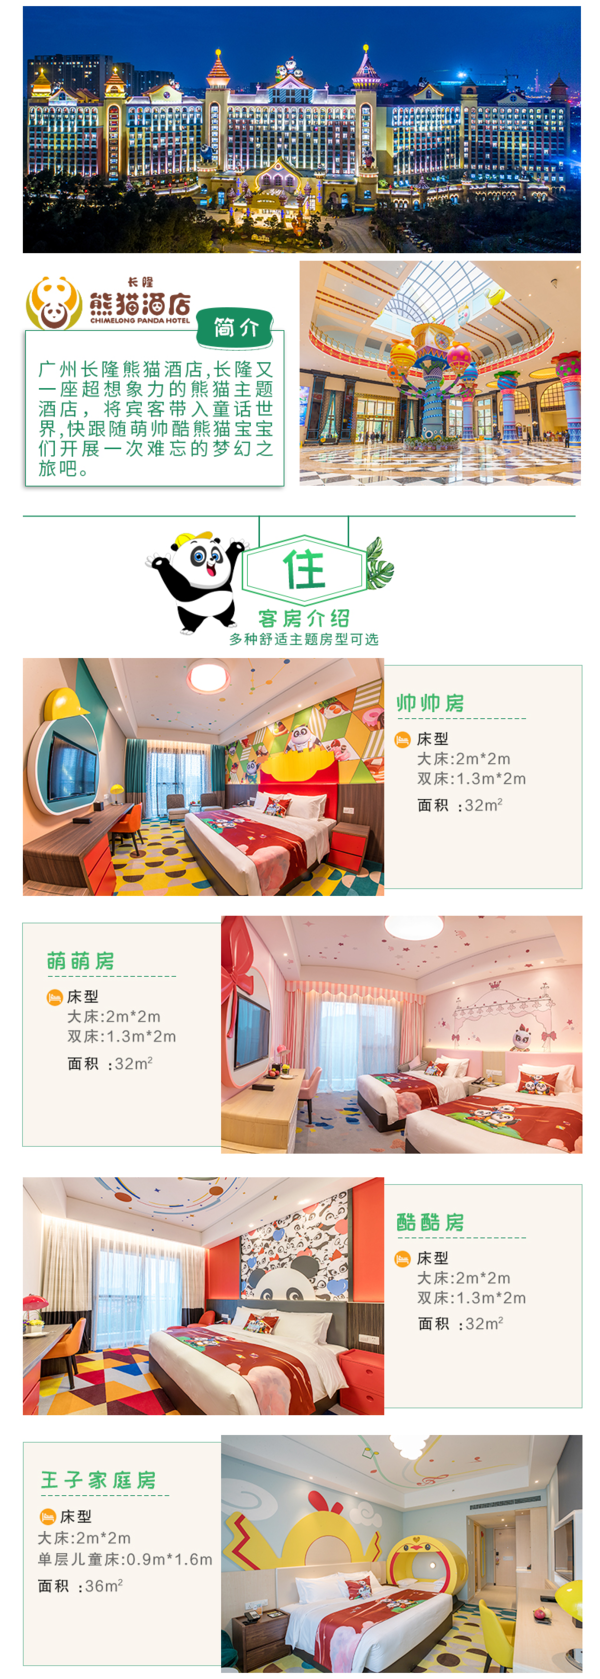 广州长隆熊猫酒店2天1晚住宿套餐 1晚主题房+度假区门票+欢迎水果+饮品